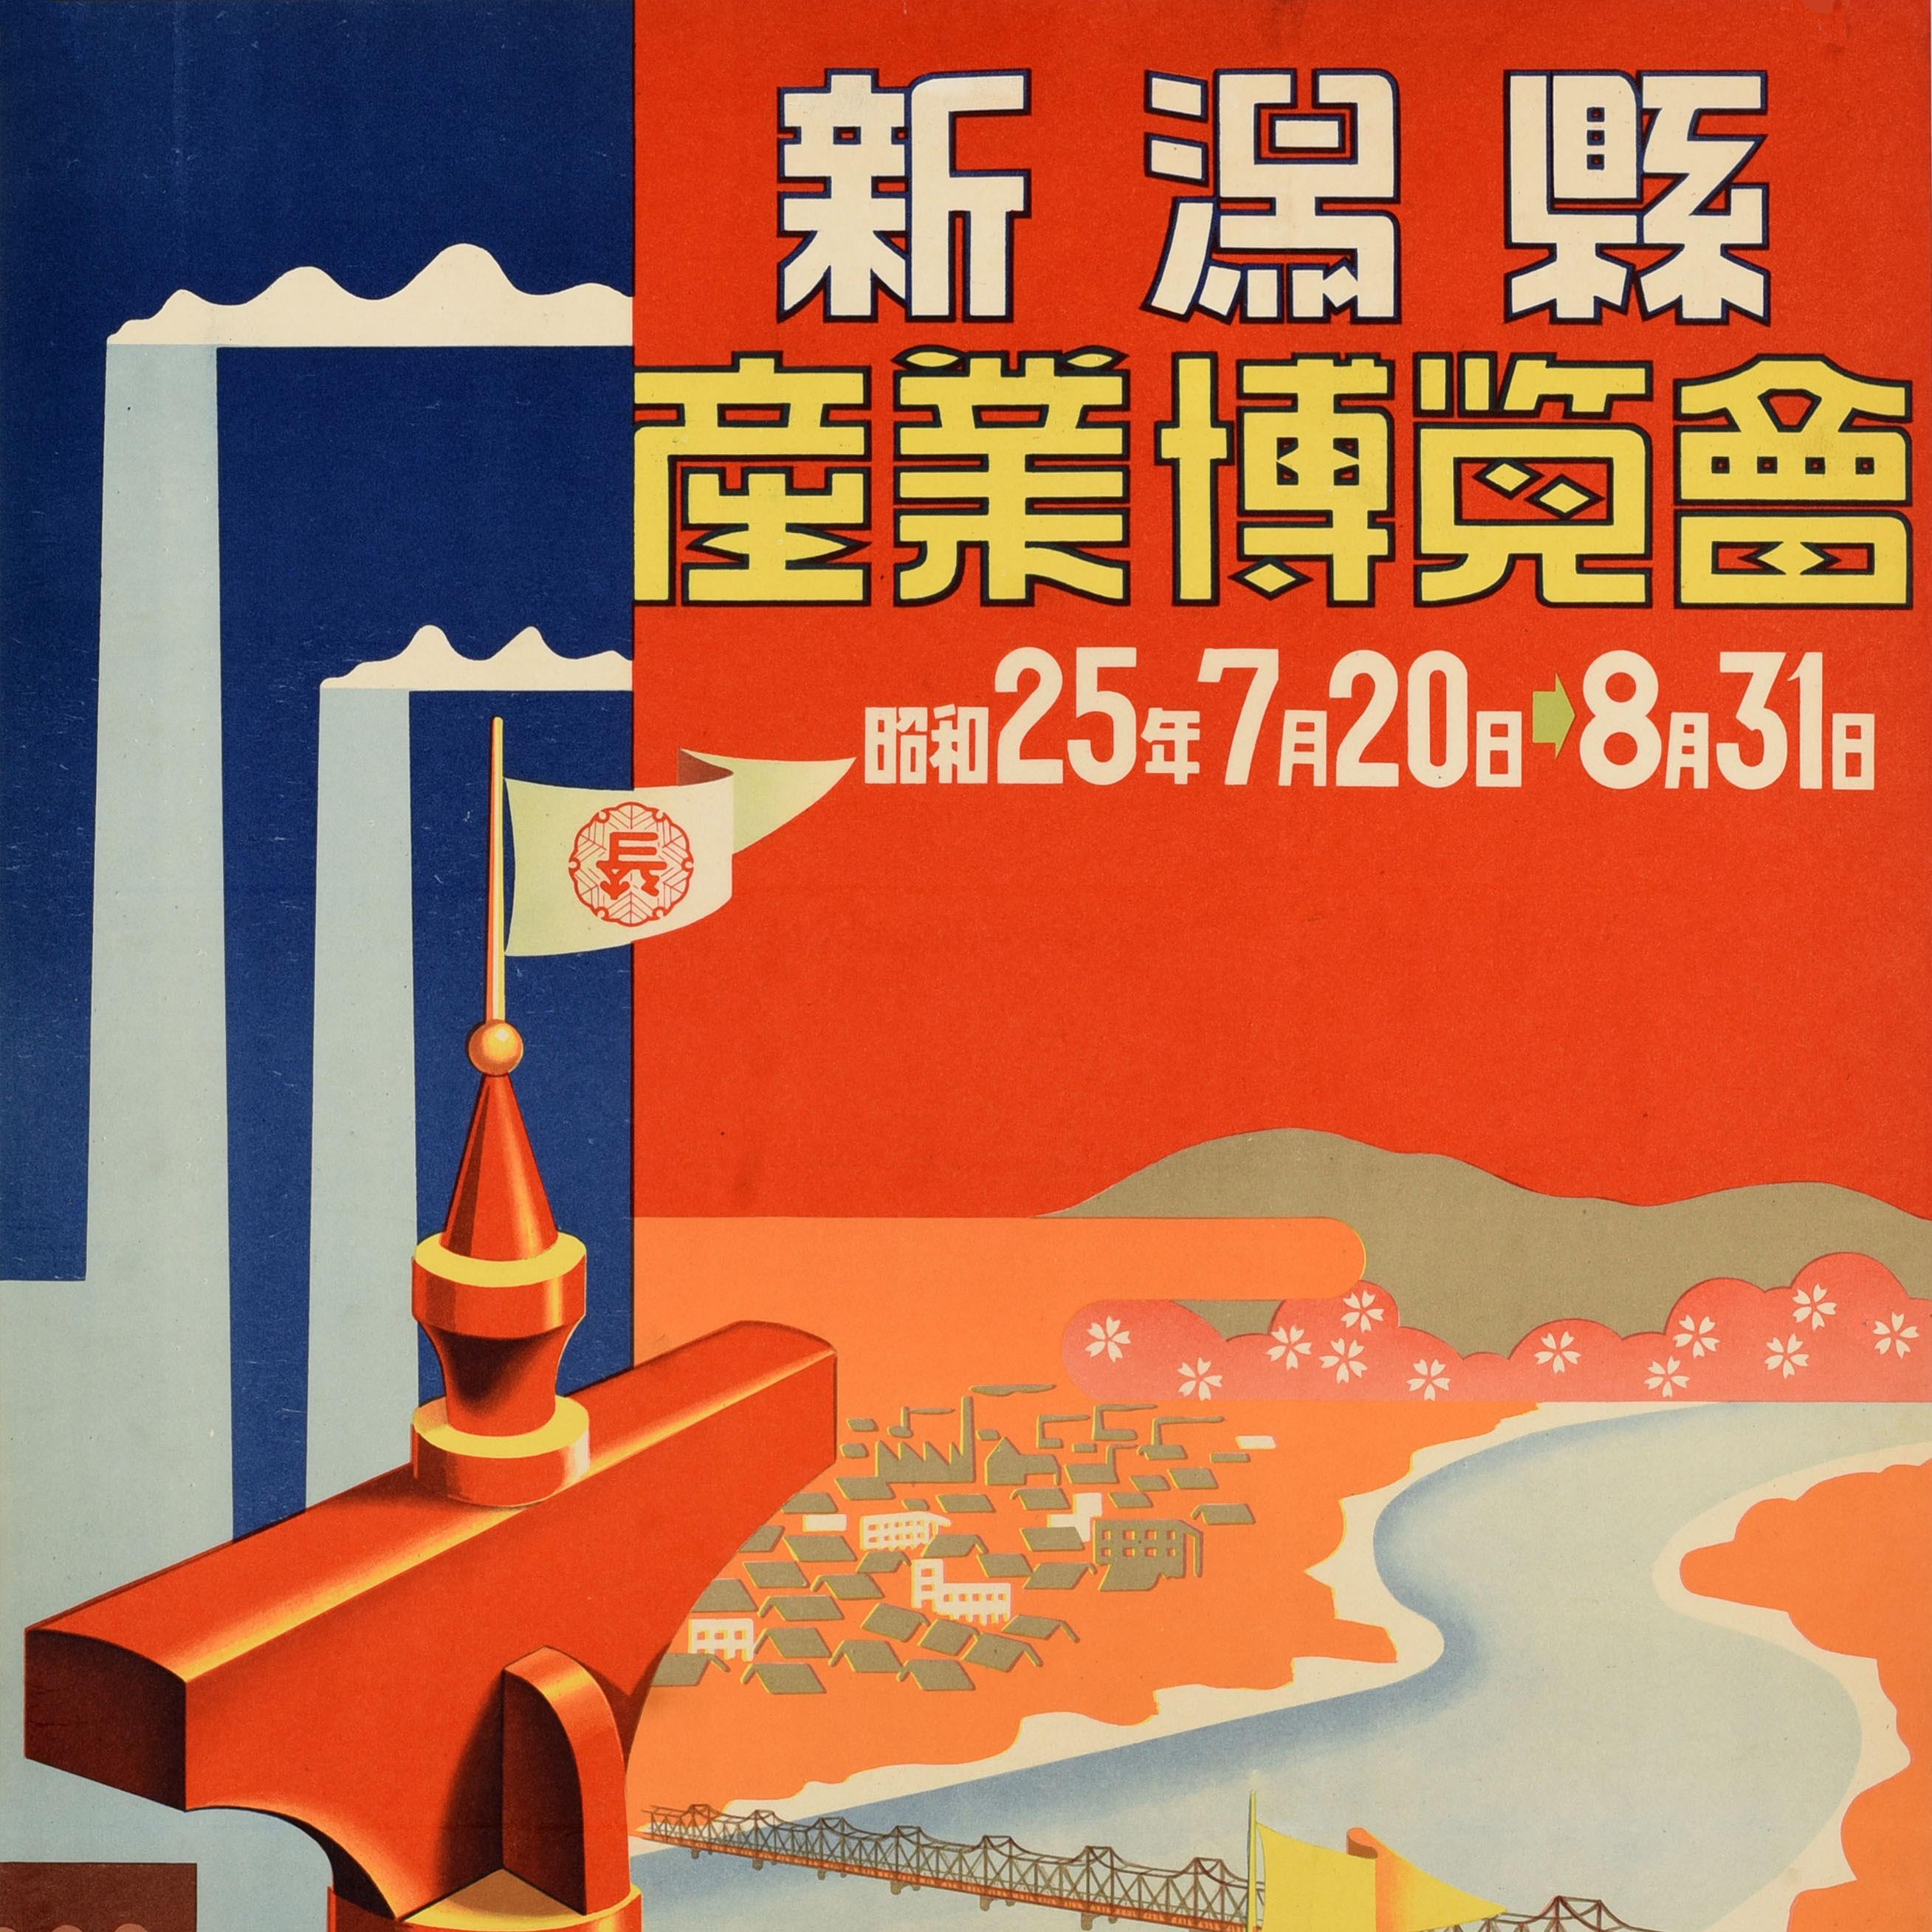 Affiche publicitaire de voyage d'époque pour l'exposition industrielle de la préfecture de Niigata (新潟) qui s'est tenue du 20 juillet au 31 août 1950. Elle présente un motif coloré représentant de la fumée s'élevant des cheminées d'usines